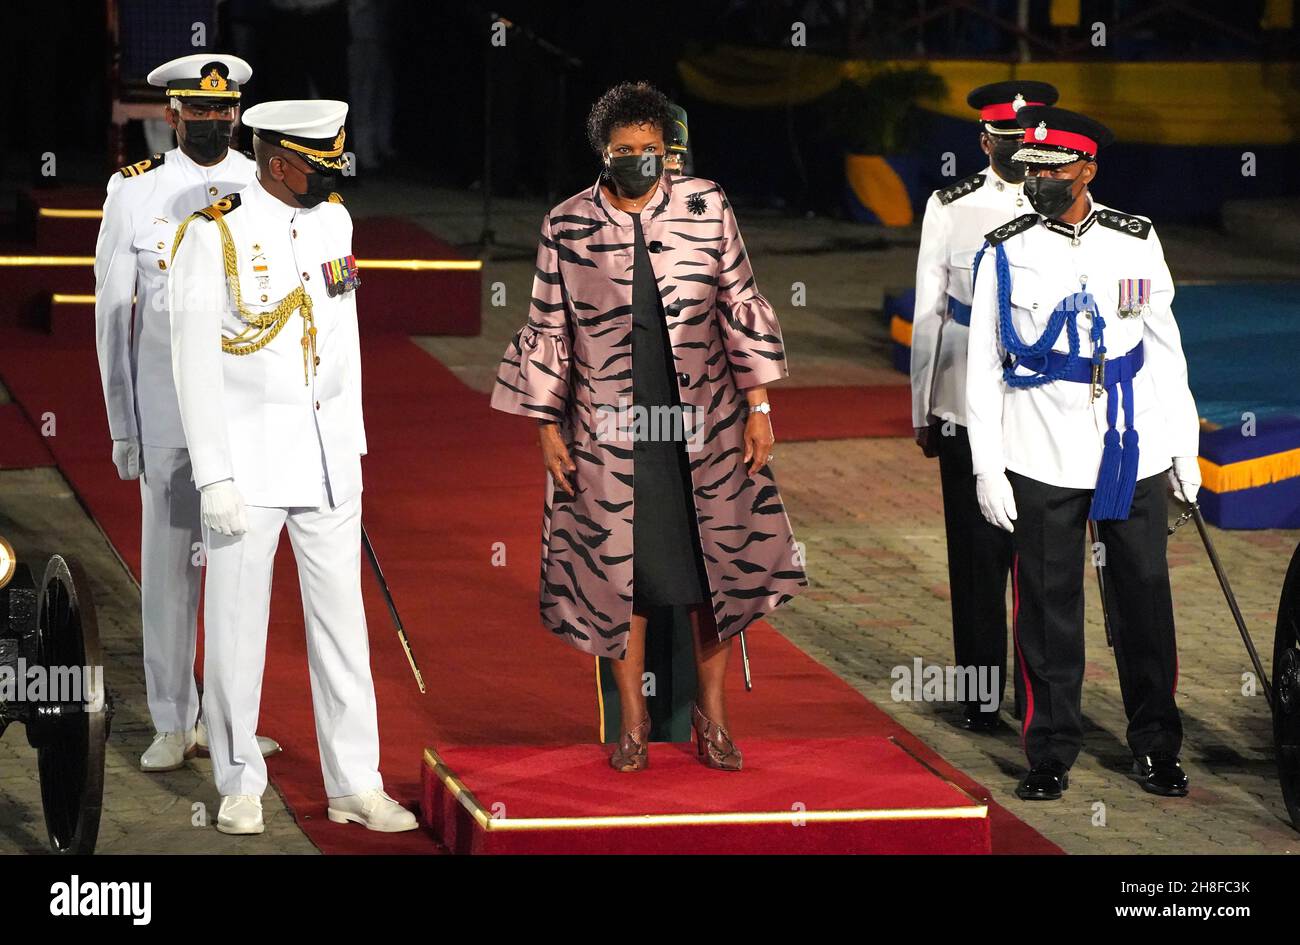 Präsidentin Sandra Mason nimmt an der Eröffnungszeremonie des Präsidenten auf dem Heroes Square in Bridgetown, Barbados, Teil. Bilddatum: Montag, 29. November 2021. Stockfoto